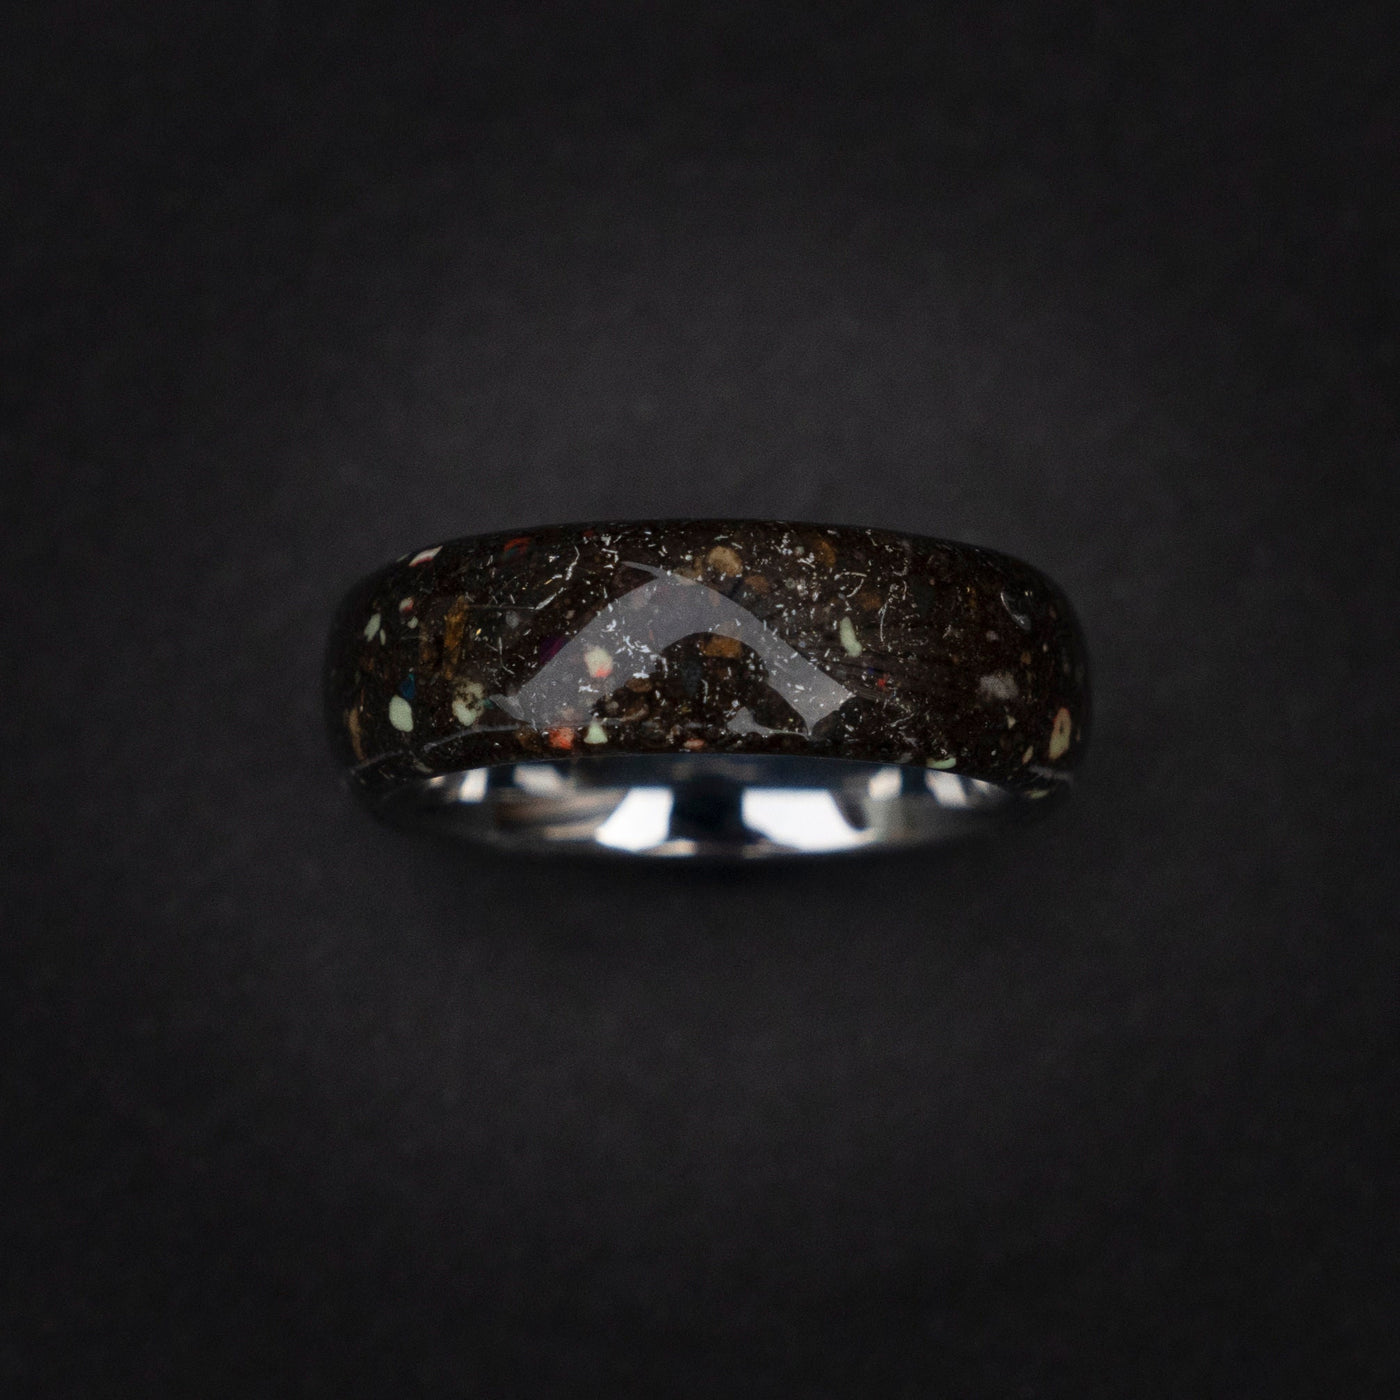 Meteorite ring, Space ring, Glow ring, Men's Meteorite Wedding Band, Unique wedding band, Men's Durable Wedding Ring,LunarJewelryforHim